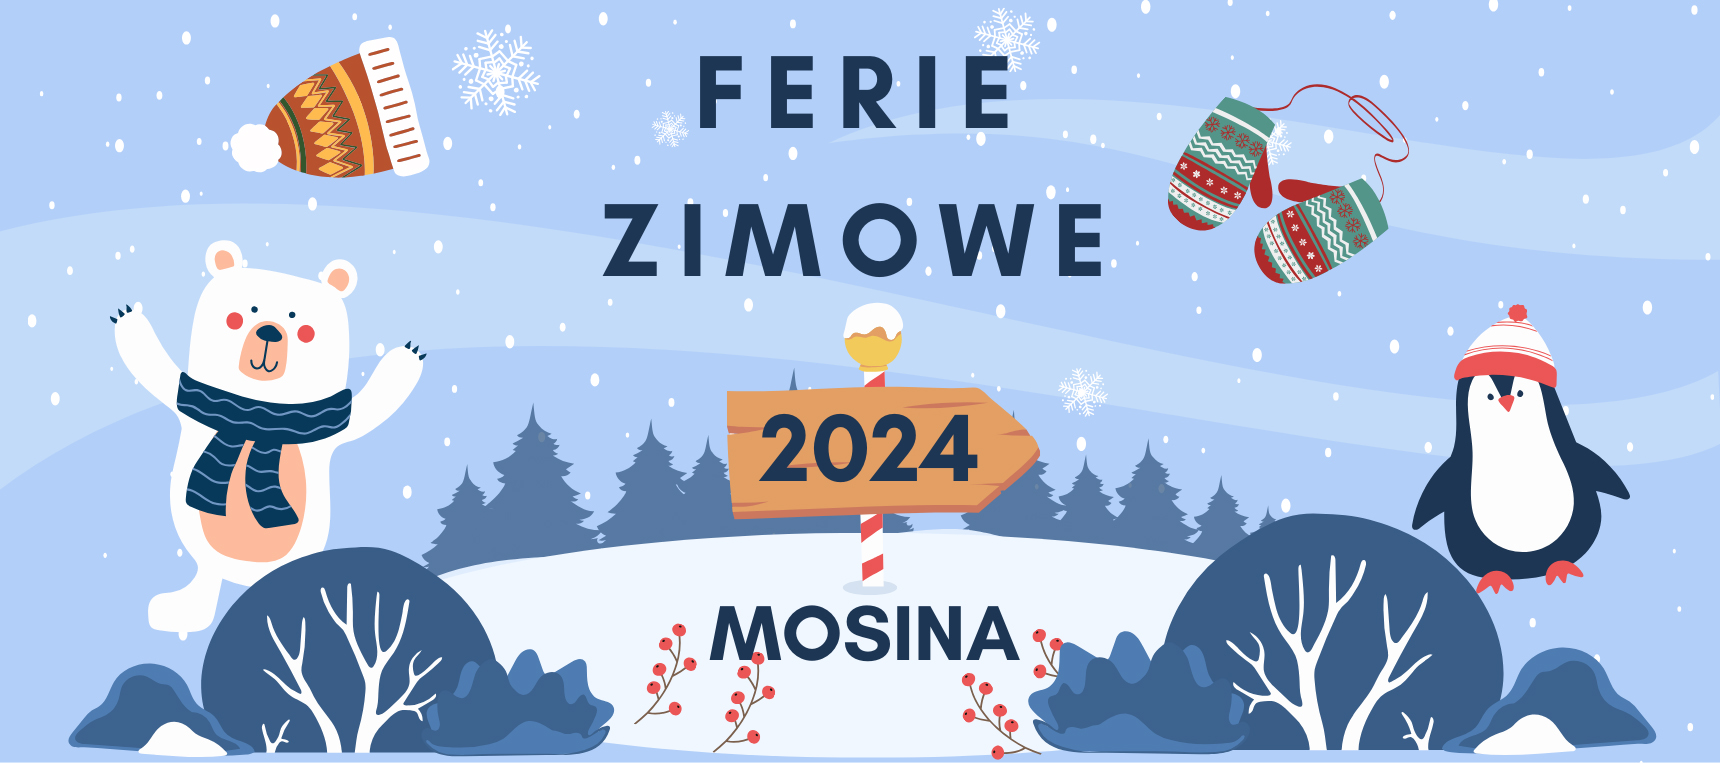 Zimowa sceneria. Po lewej stronie biały miś z niebieskim szalikiem, po prawej pingwin ubrany w czapkę. Na środku napis: Ferie Zimowe 2024 Mosina. W oddali widać las.